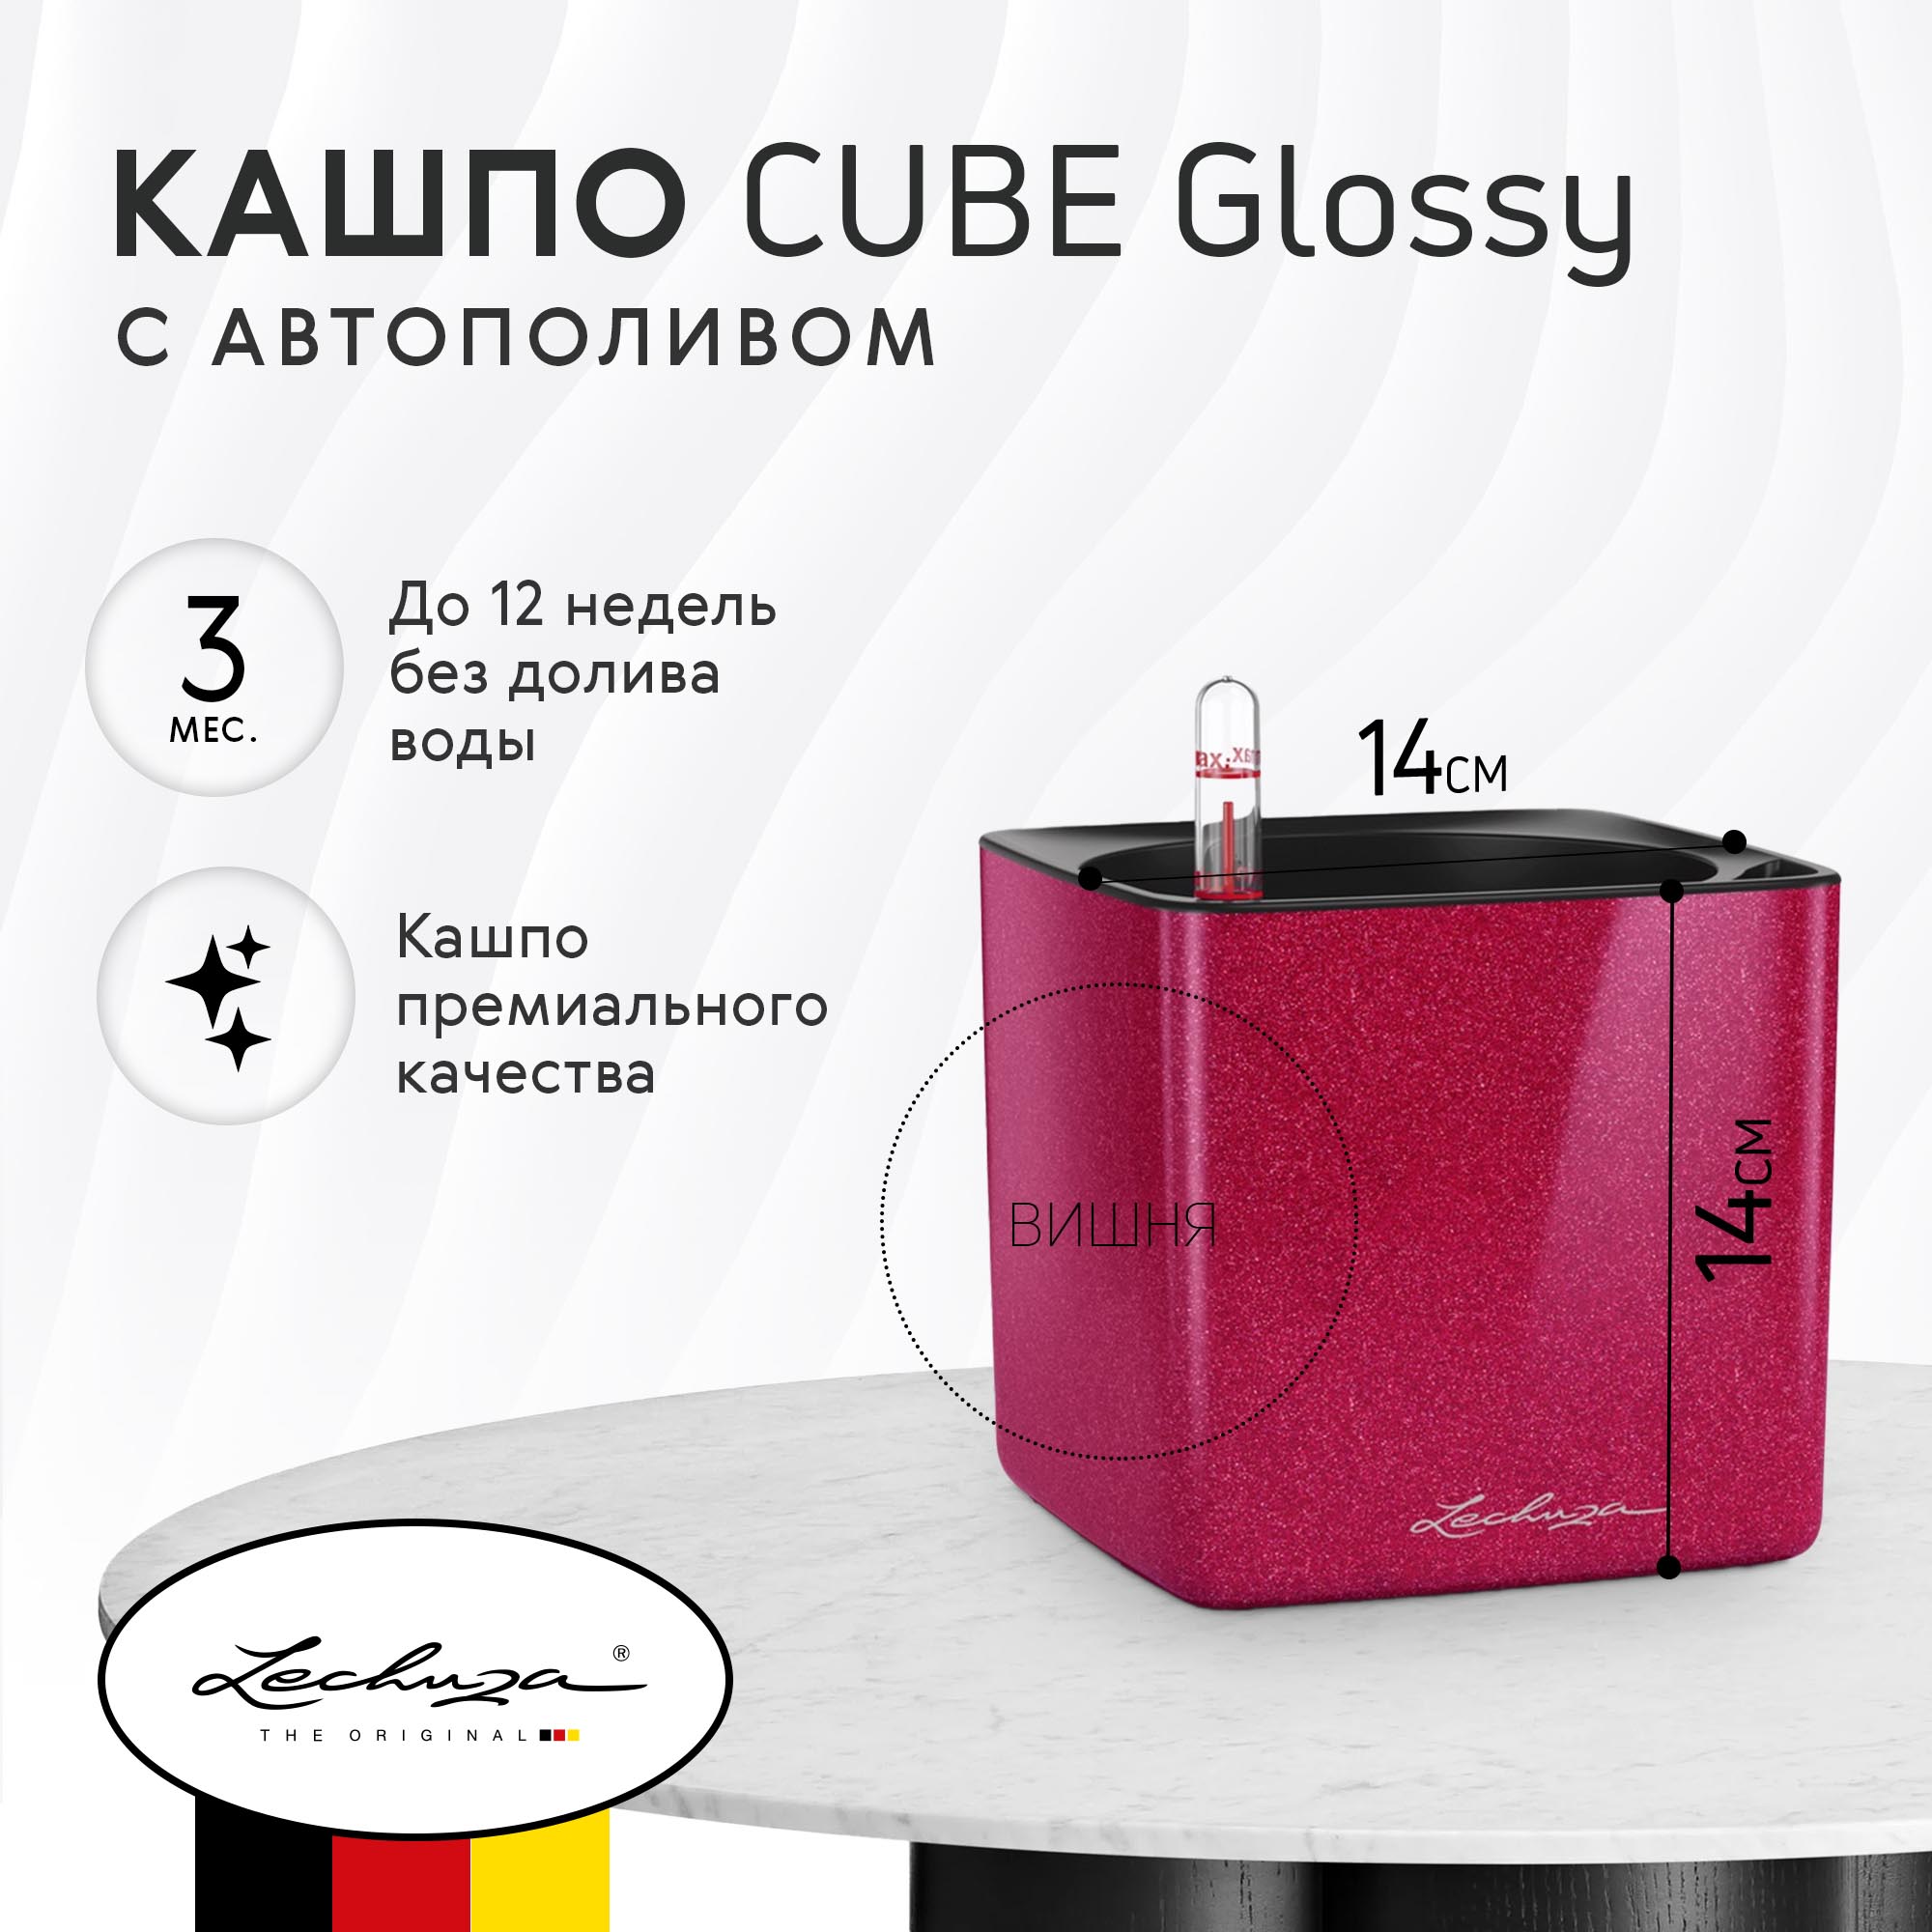 Кашпо Lechuza cube glossy 14x14 вишня с автополивом - фото 2